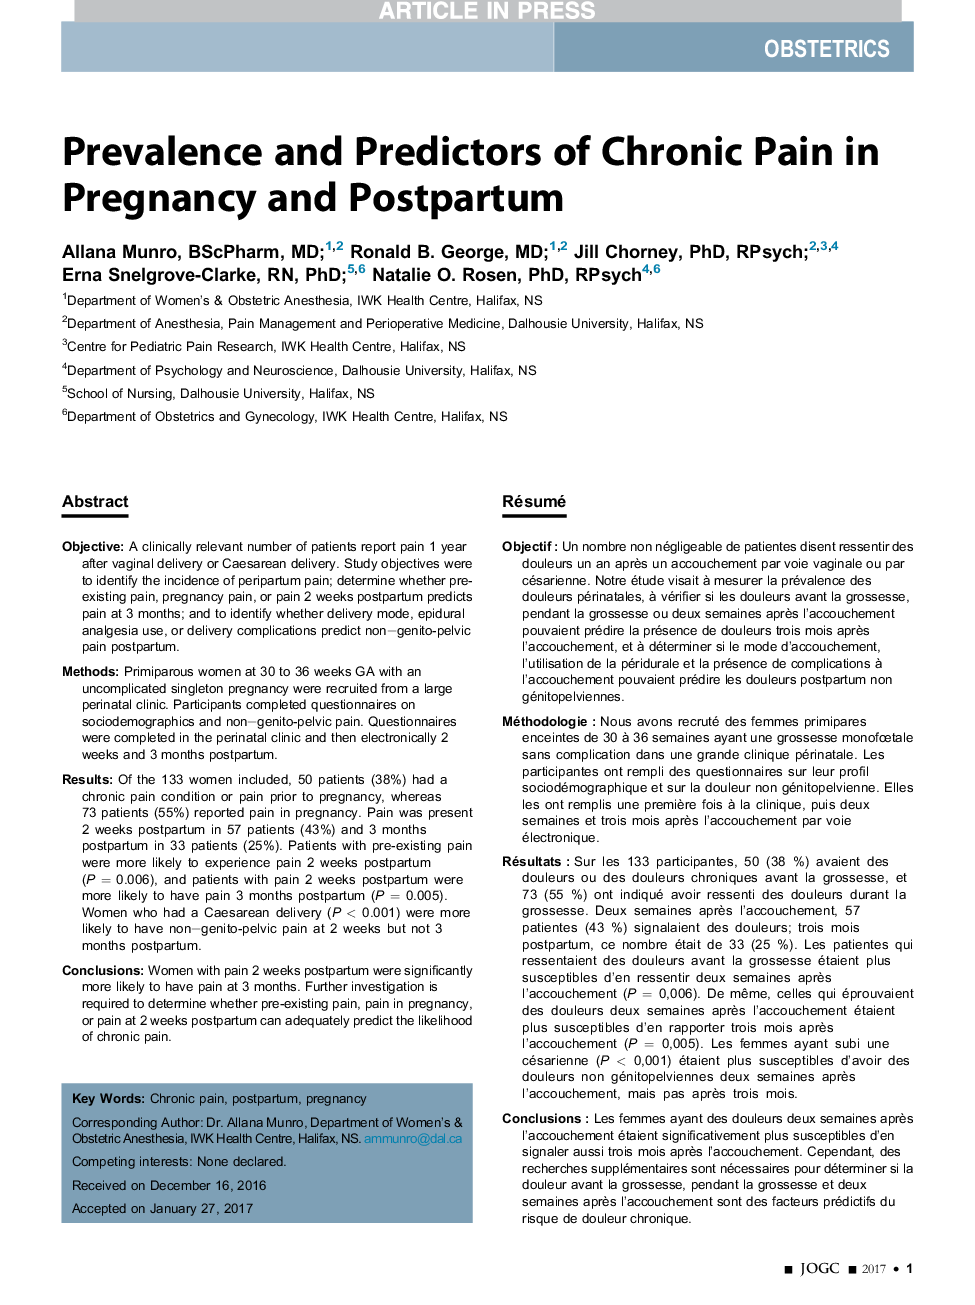 شیوع و پیش بینی درد مزمن در بارداری و پس از زایمان 